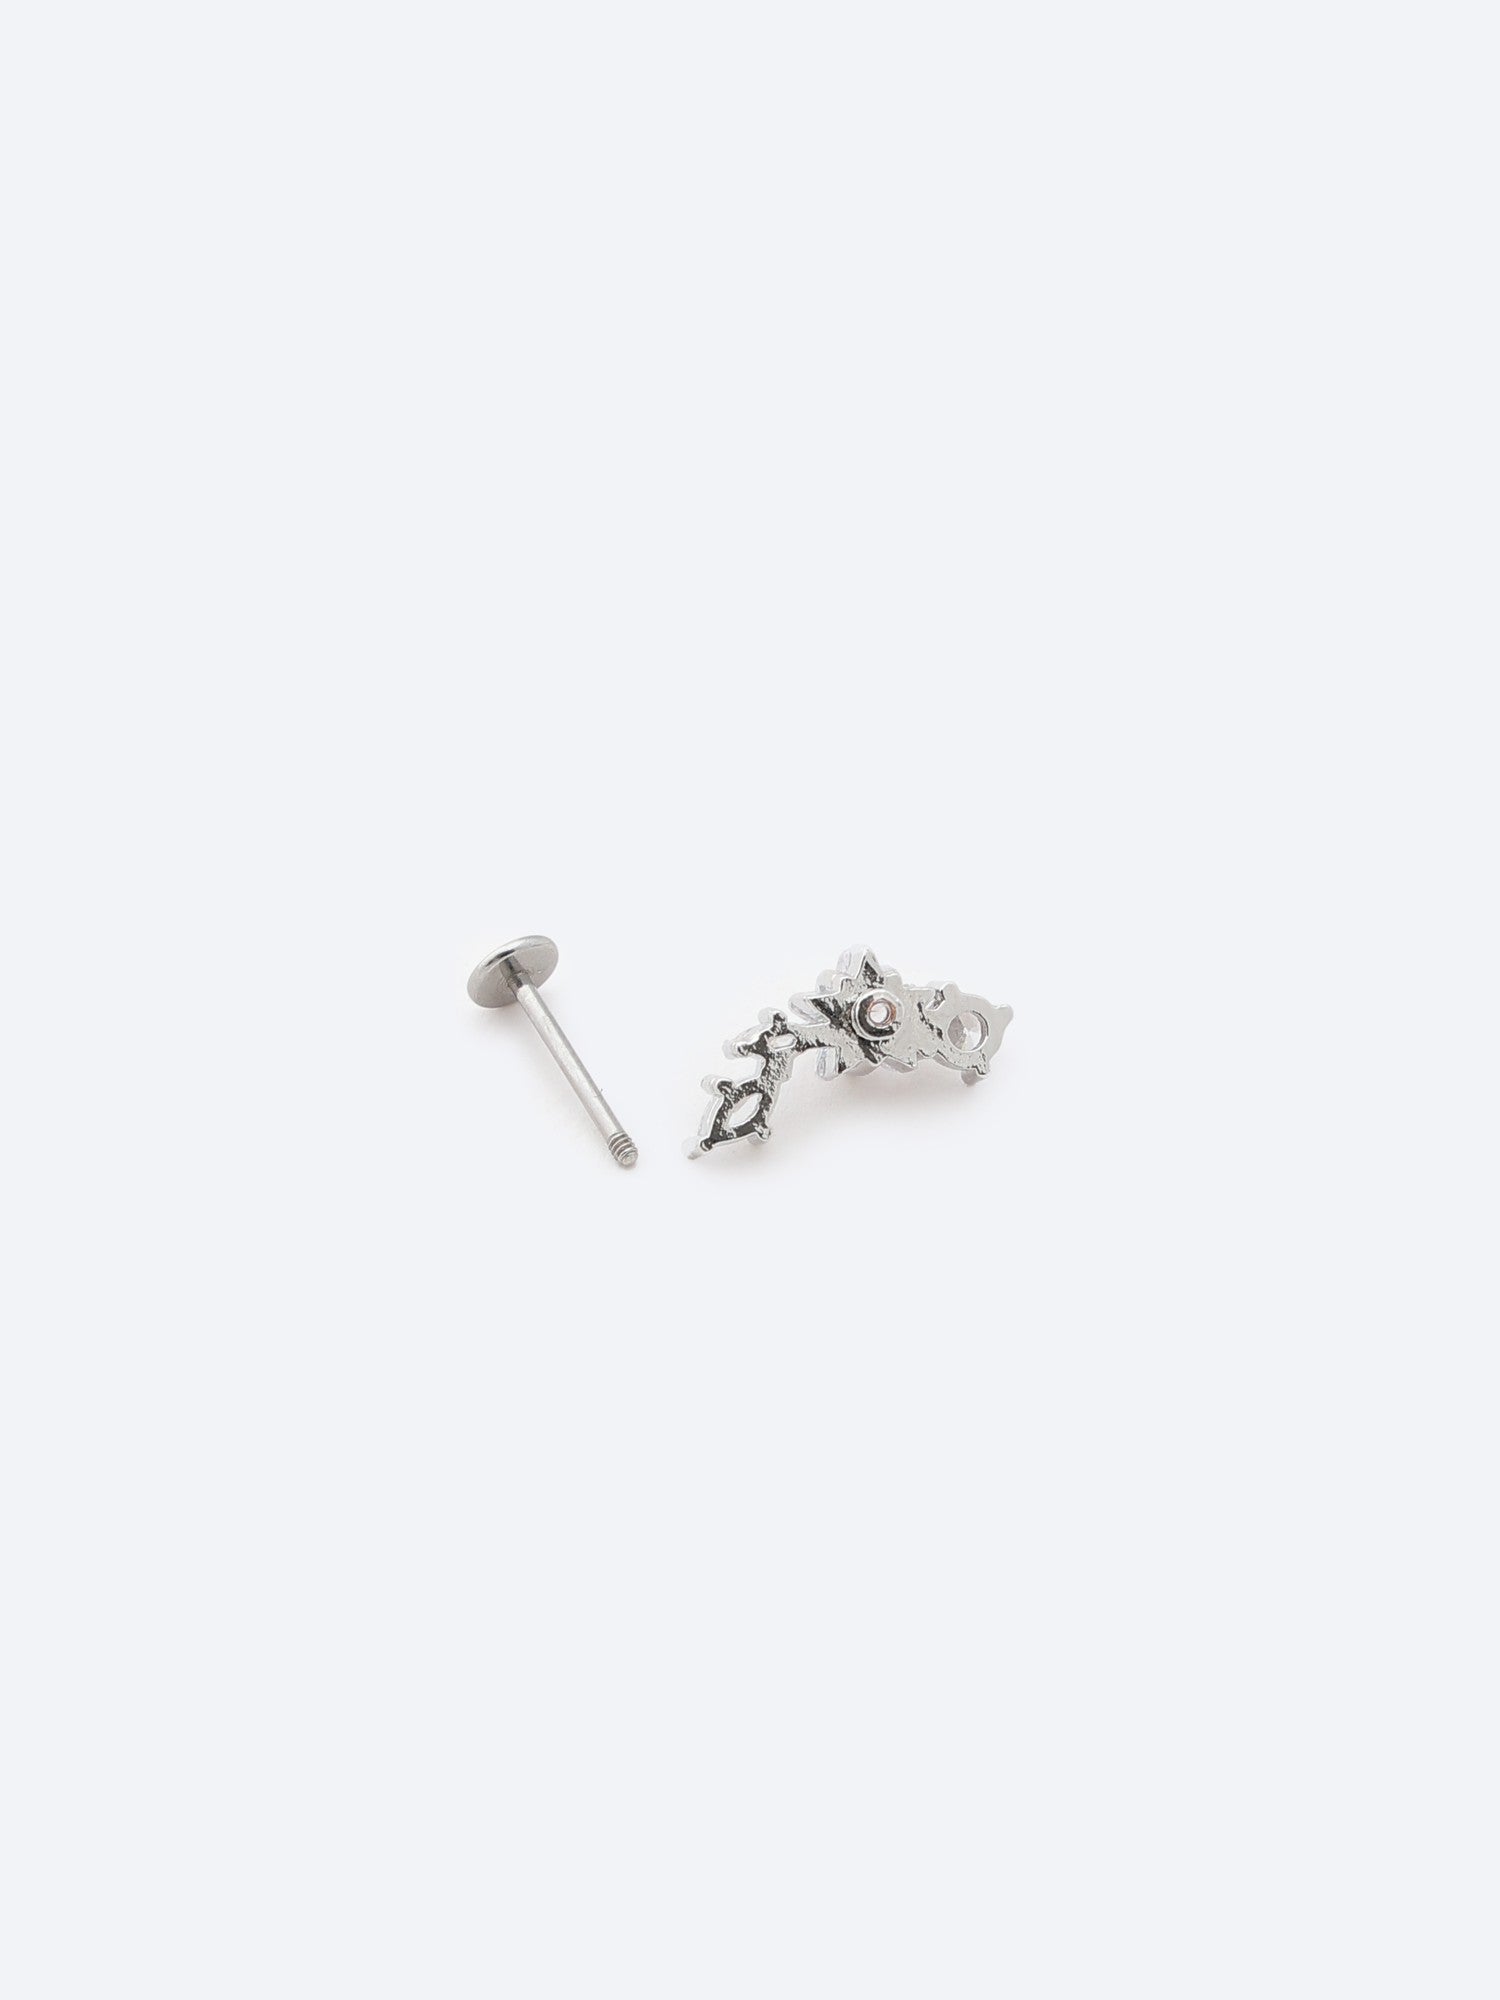 Ember Silver-Tone Stainless Steel Stud Earrings